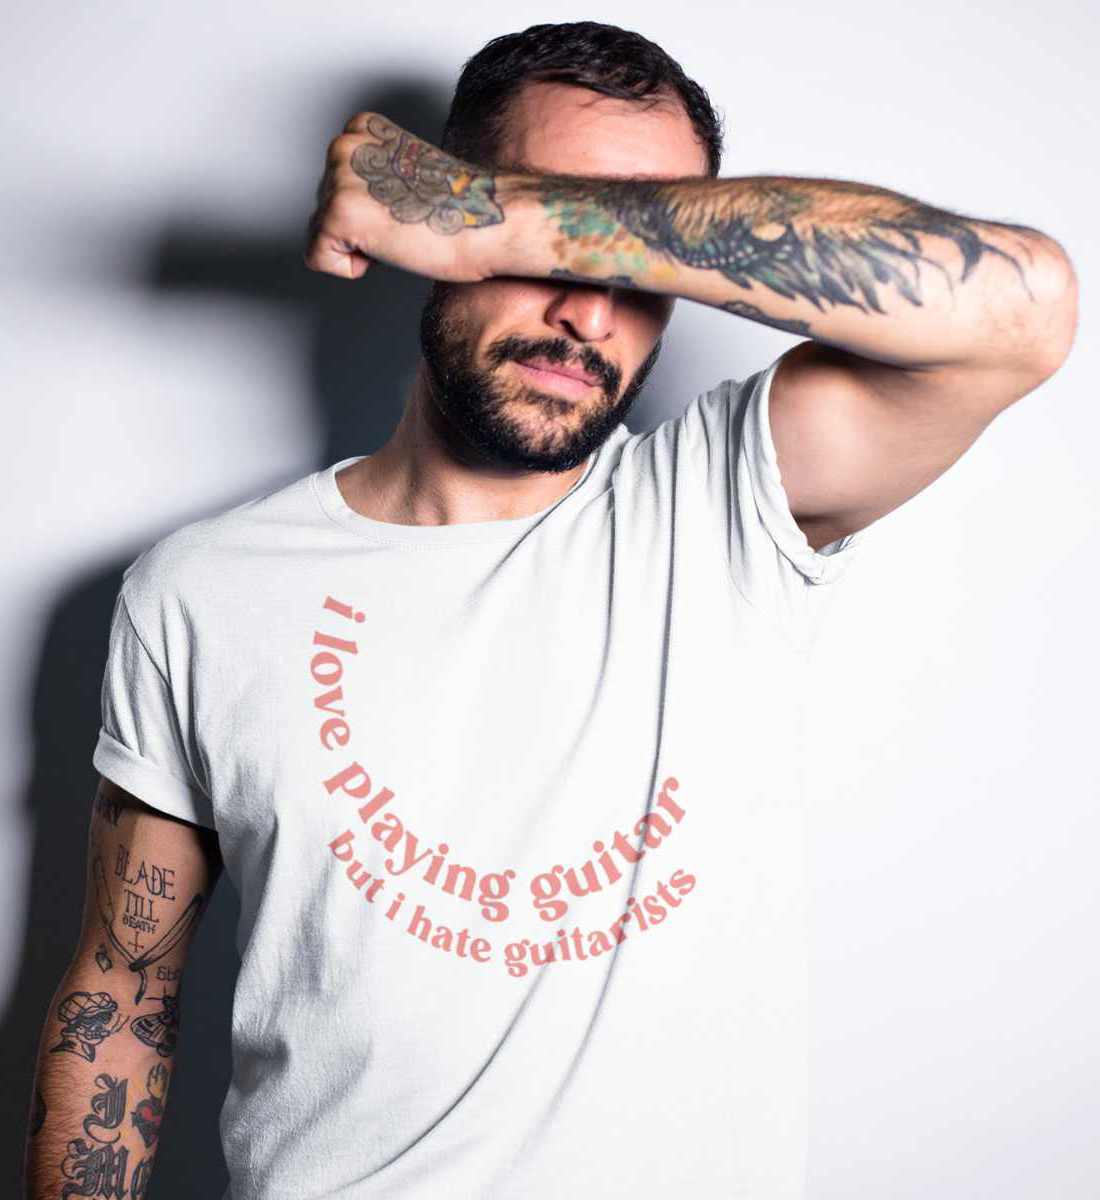 T-Shirts Relaxed Fit für Frauen und Männer bedruckt mit Print Design der Love and Hate Edition im Roger Rockawoo Clothing Webstore Subcultures Finest White-3